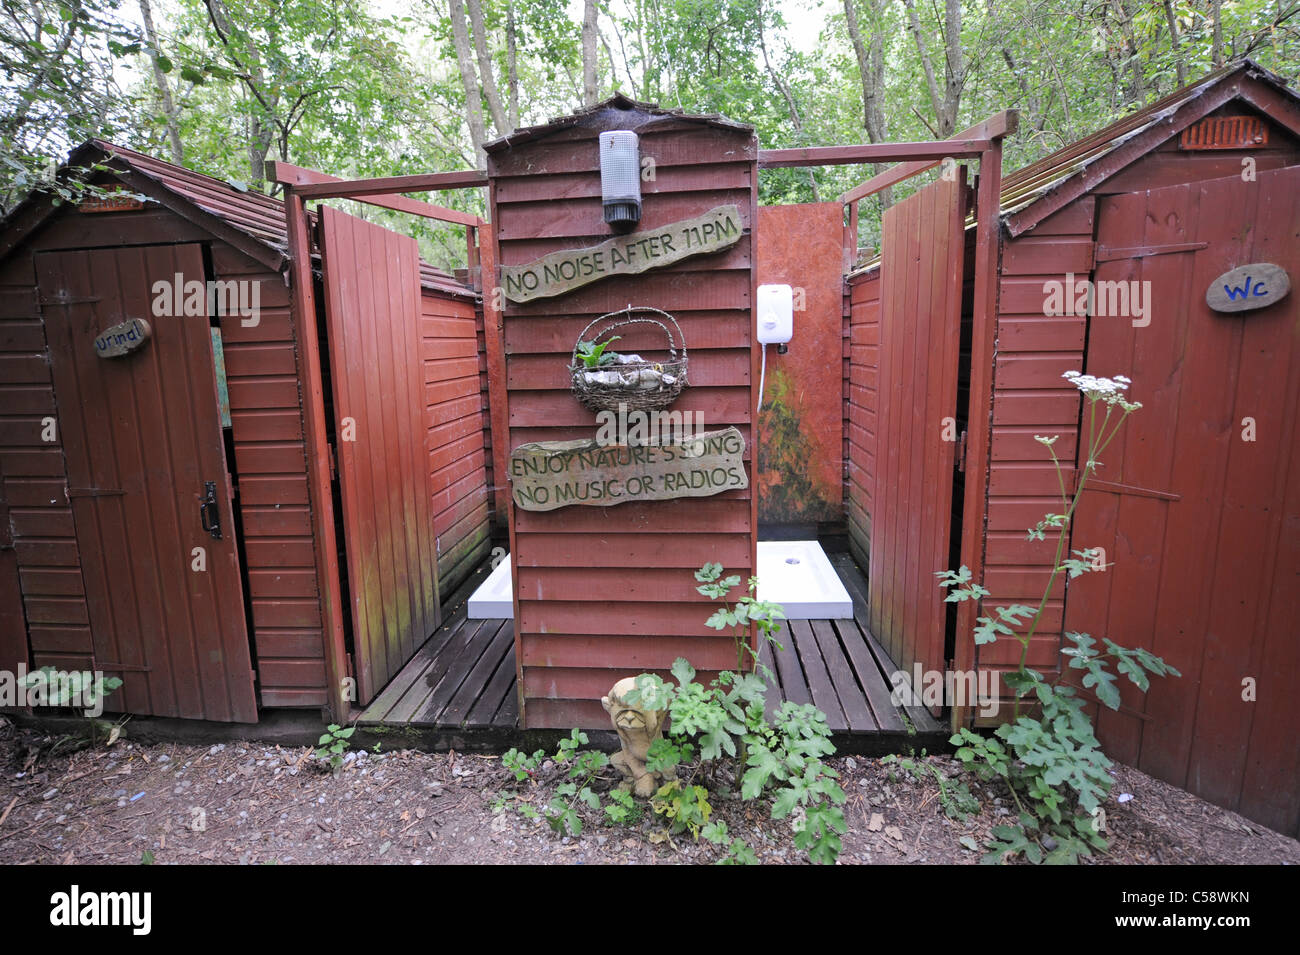 Gratuites au Blackberry Farm camping à Vuiteboeuf de Genève à Sussex, où le propriétaire Tim Johnson loue des différents styles de caravanes Banque D'Images